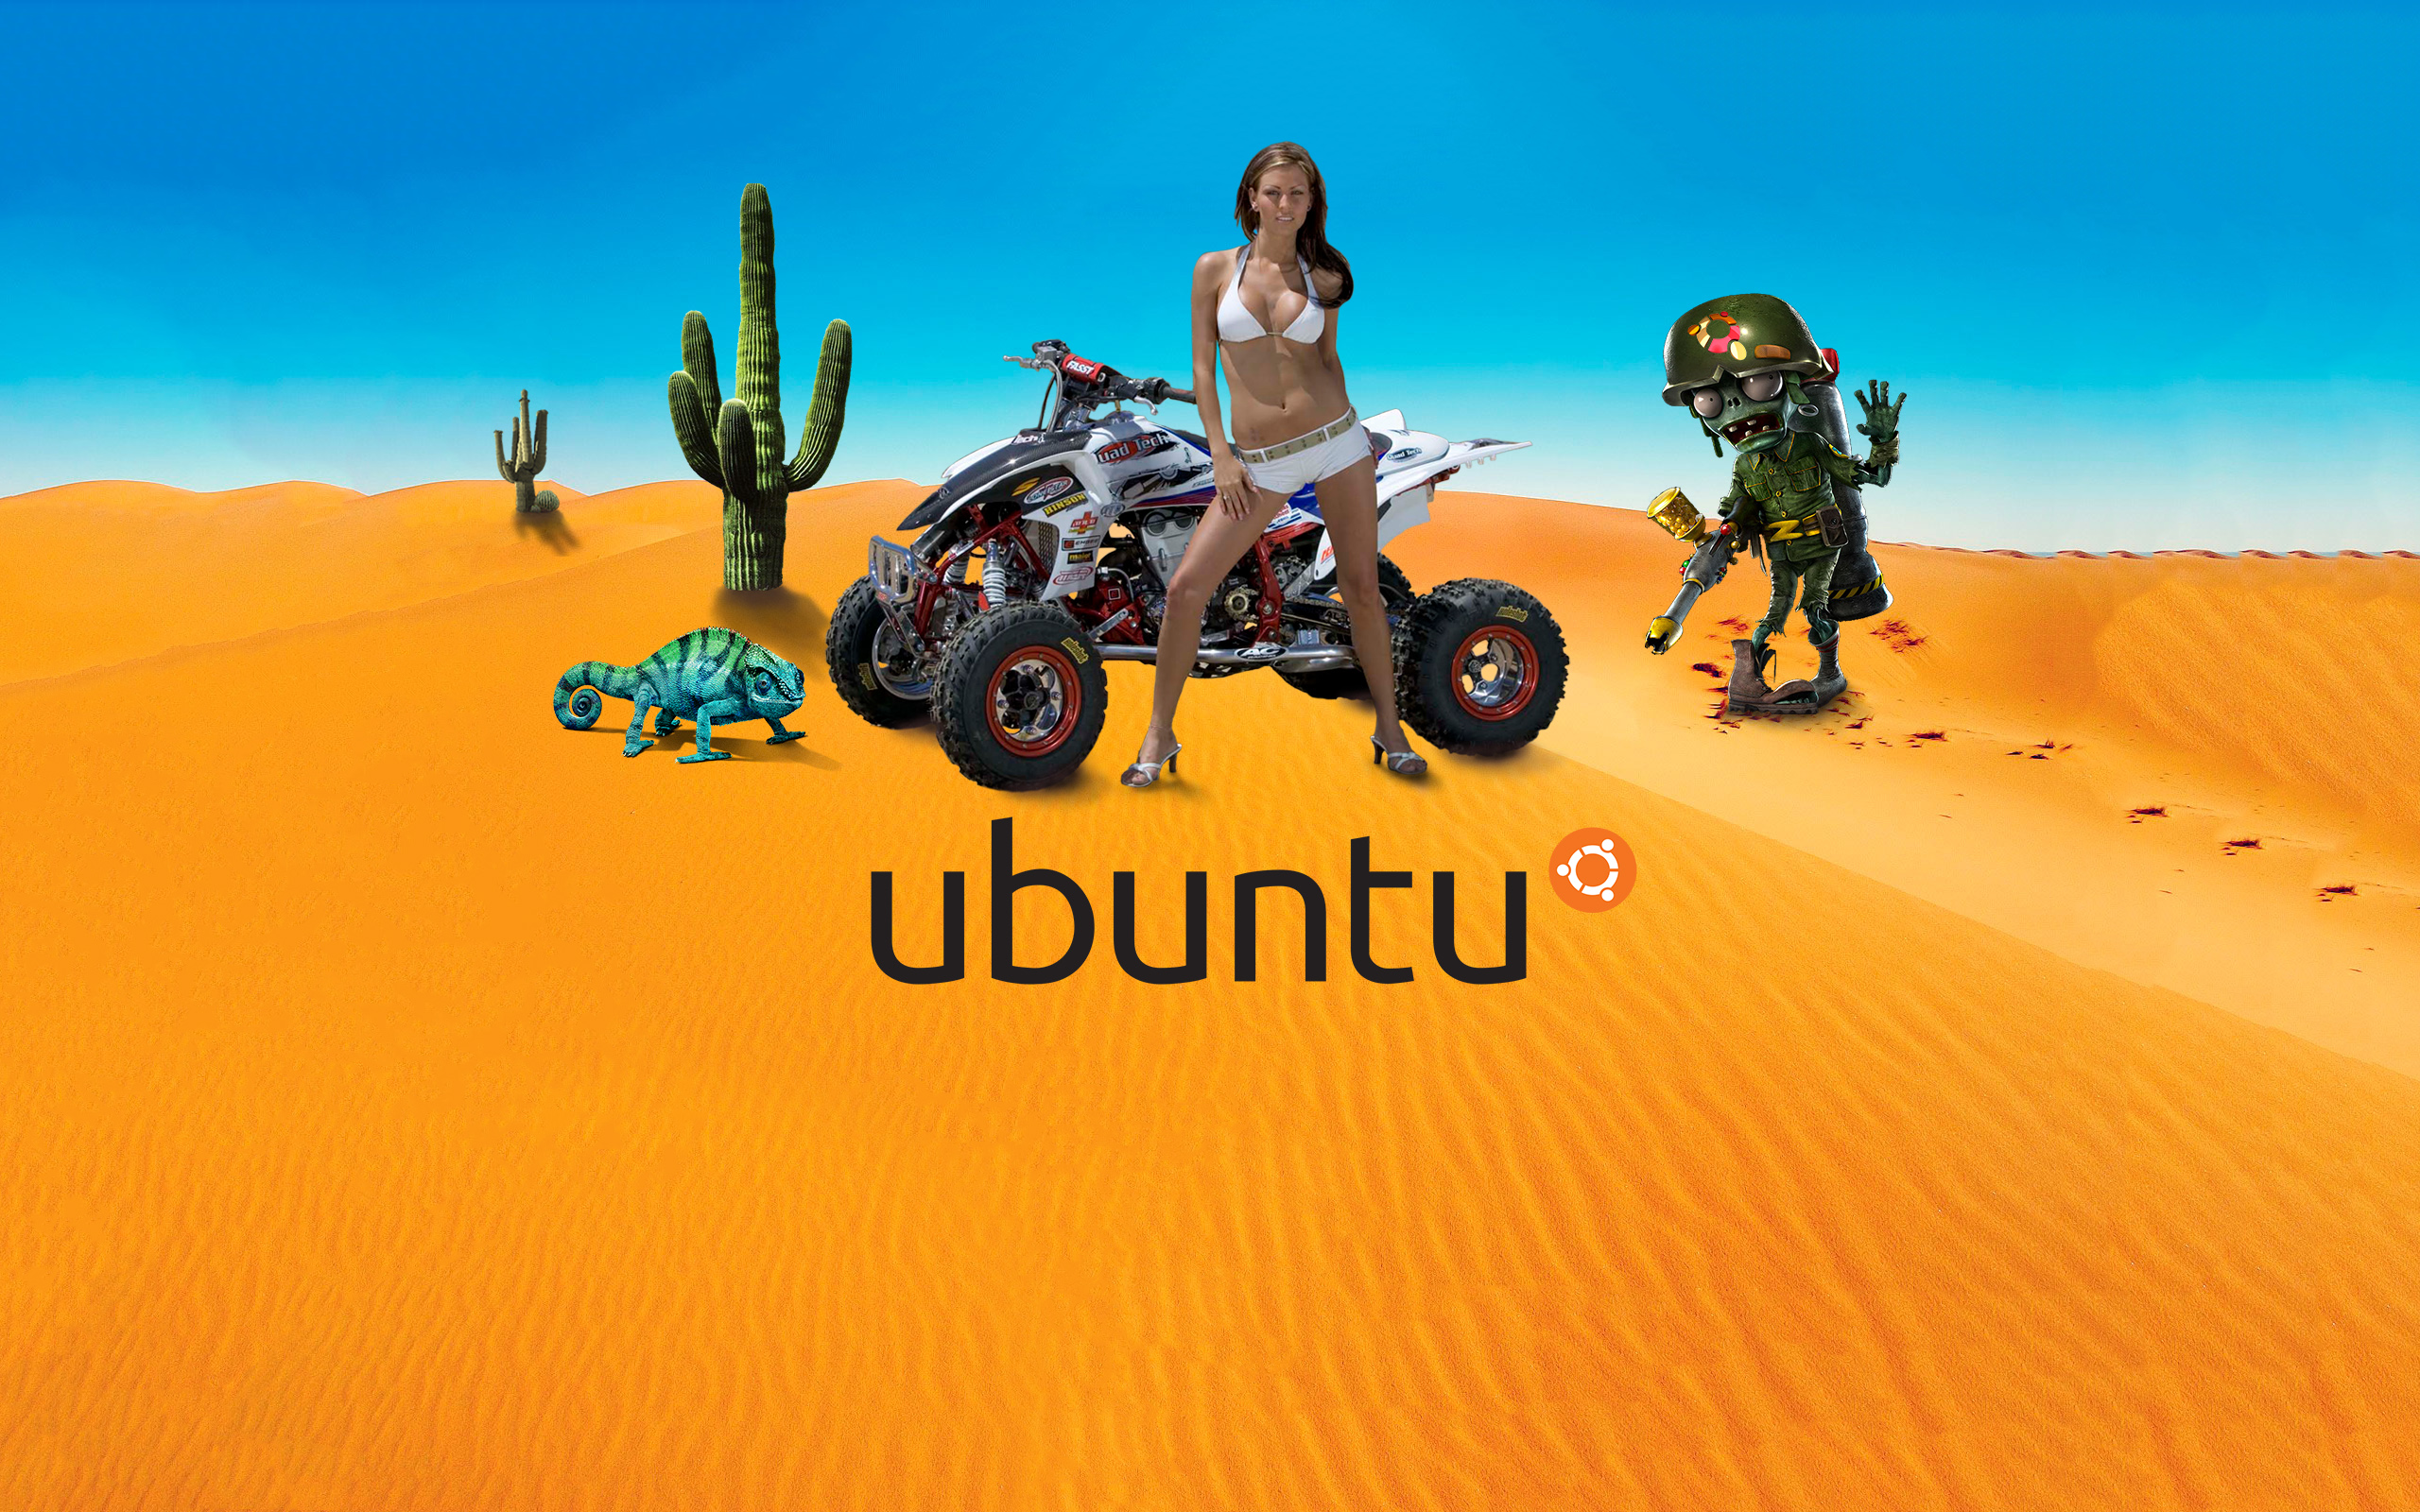 Ubuntu desert, wallpaper v.2